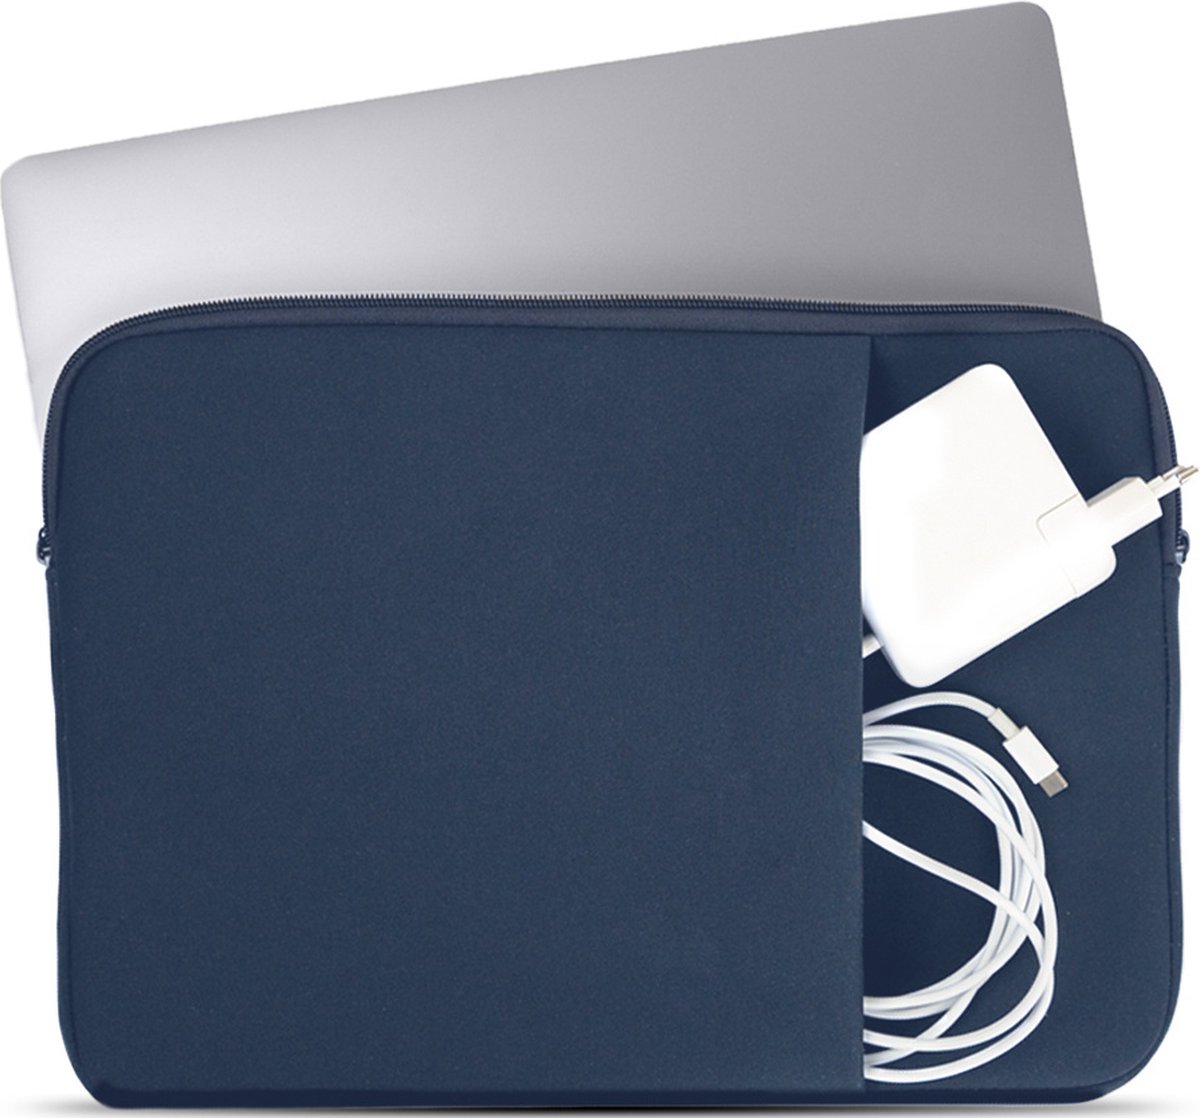 Coverzs Laptophoes 15 6 inch (donkerblauw) - Laptoptas dames / heren geschikt voor o.a. 15 6 inch laptop - Macbook hoes met ritssluiting - waterafstotende hoes